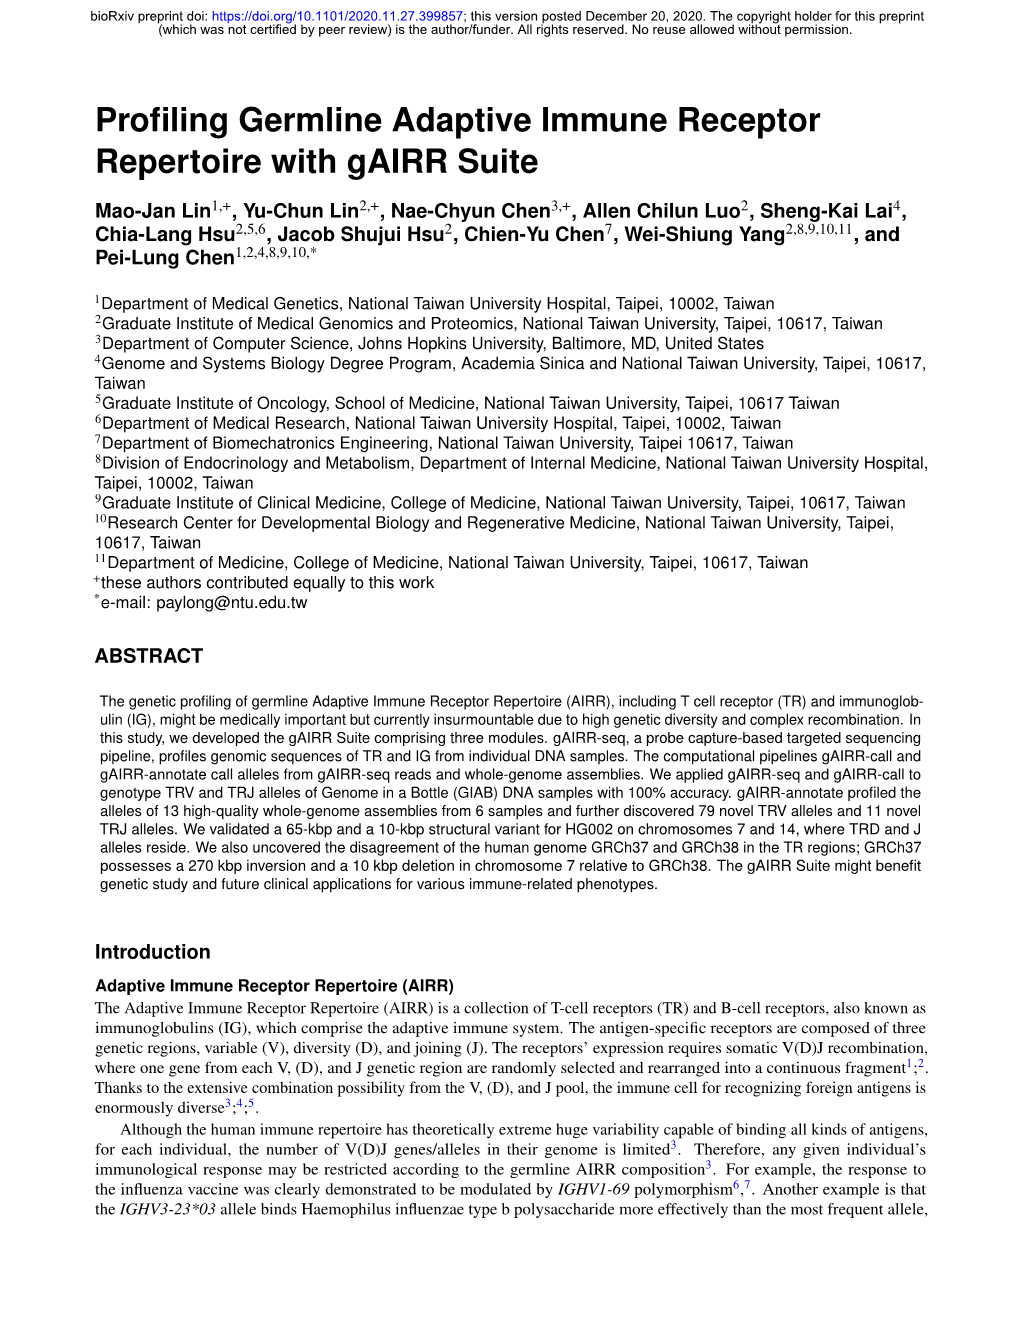 Profiling Germline Adaptive Immune Receptor Repertoire with Gairr Suite